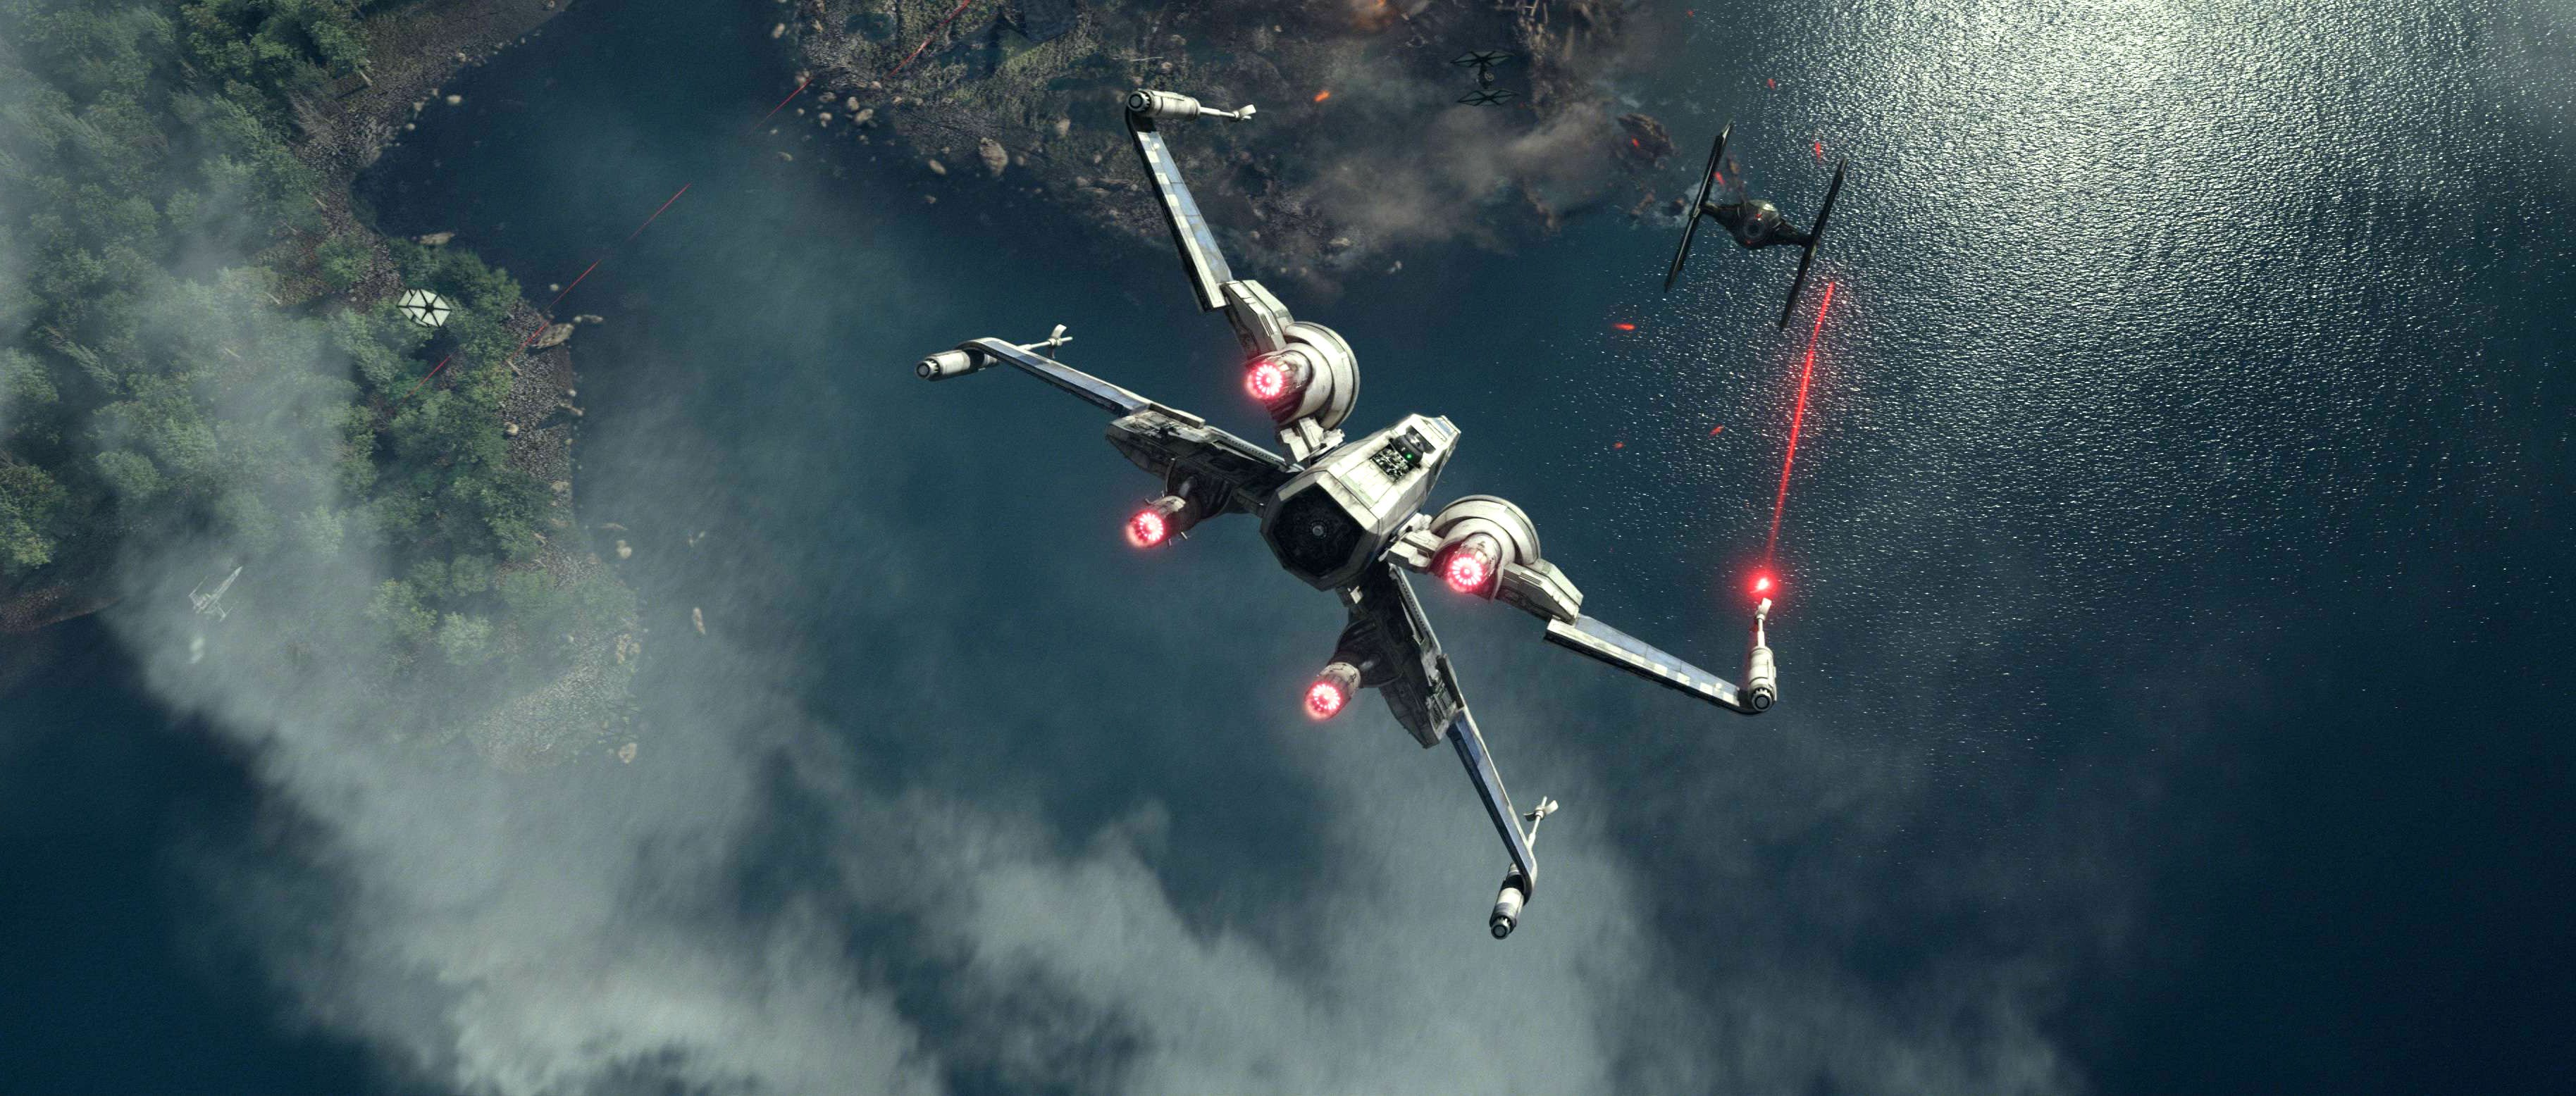 star war the force awakens full movie